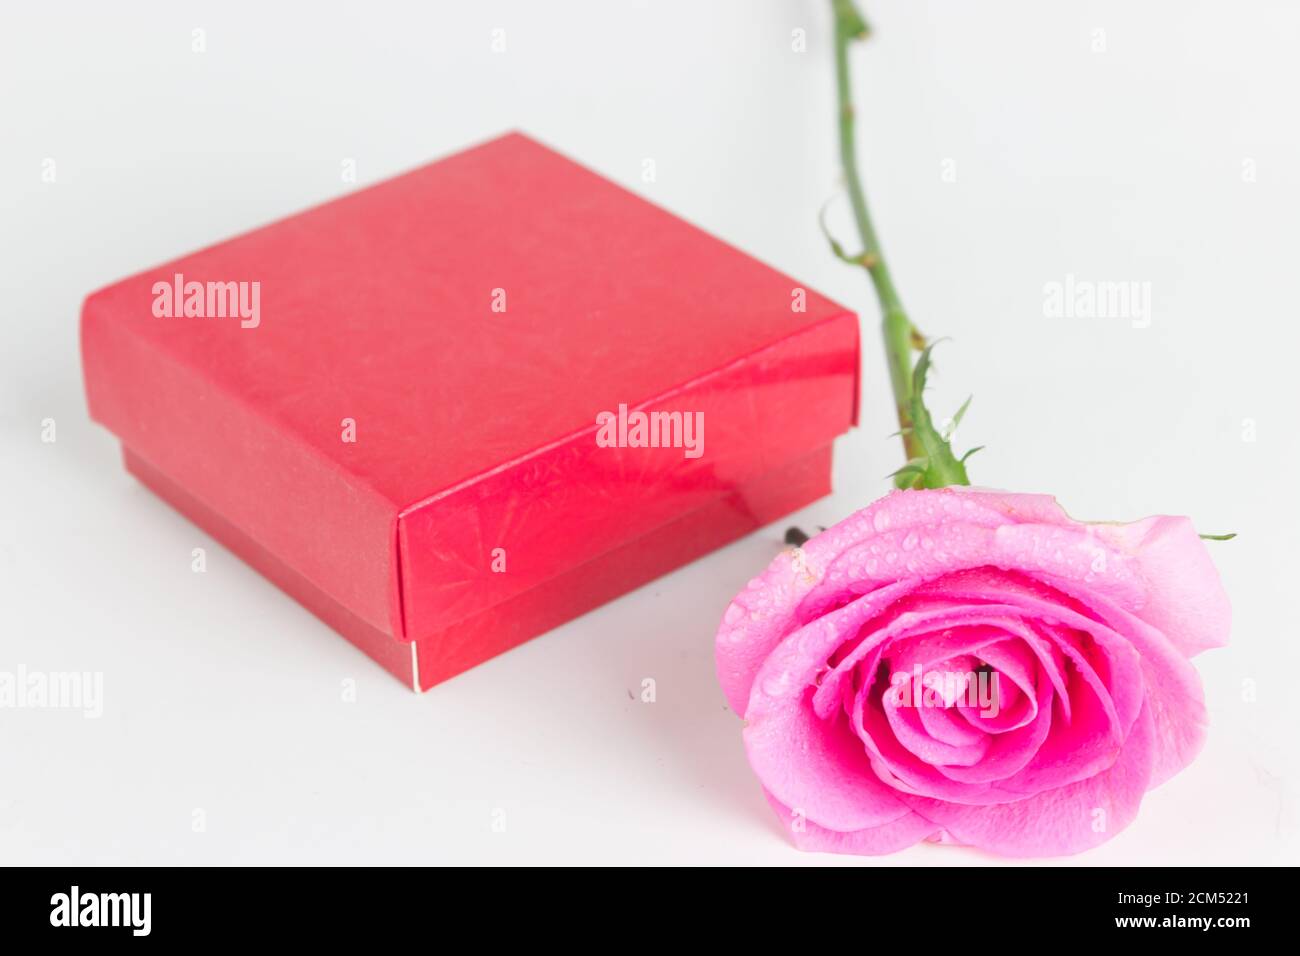 confezione regalo rossa per amore e romanticismo con rosa Foto Stock